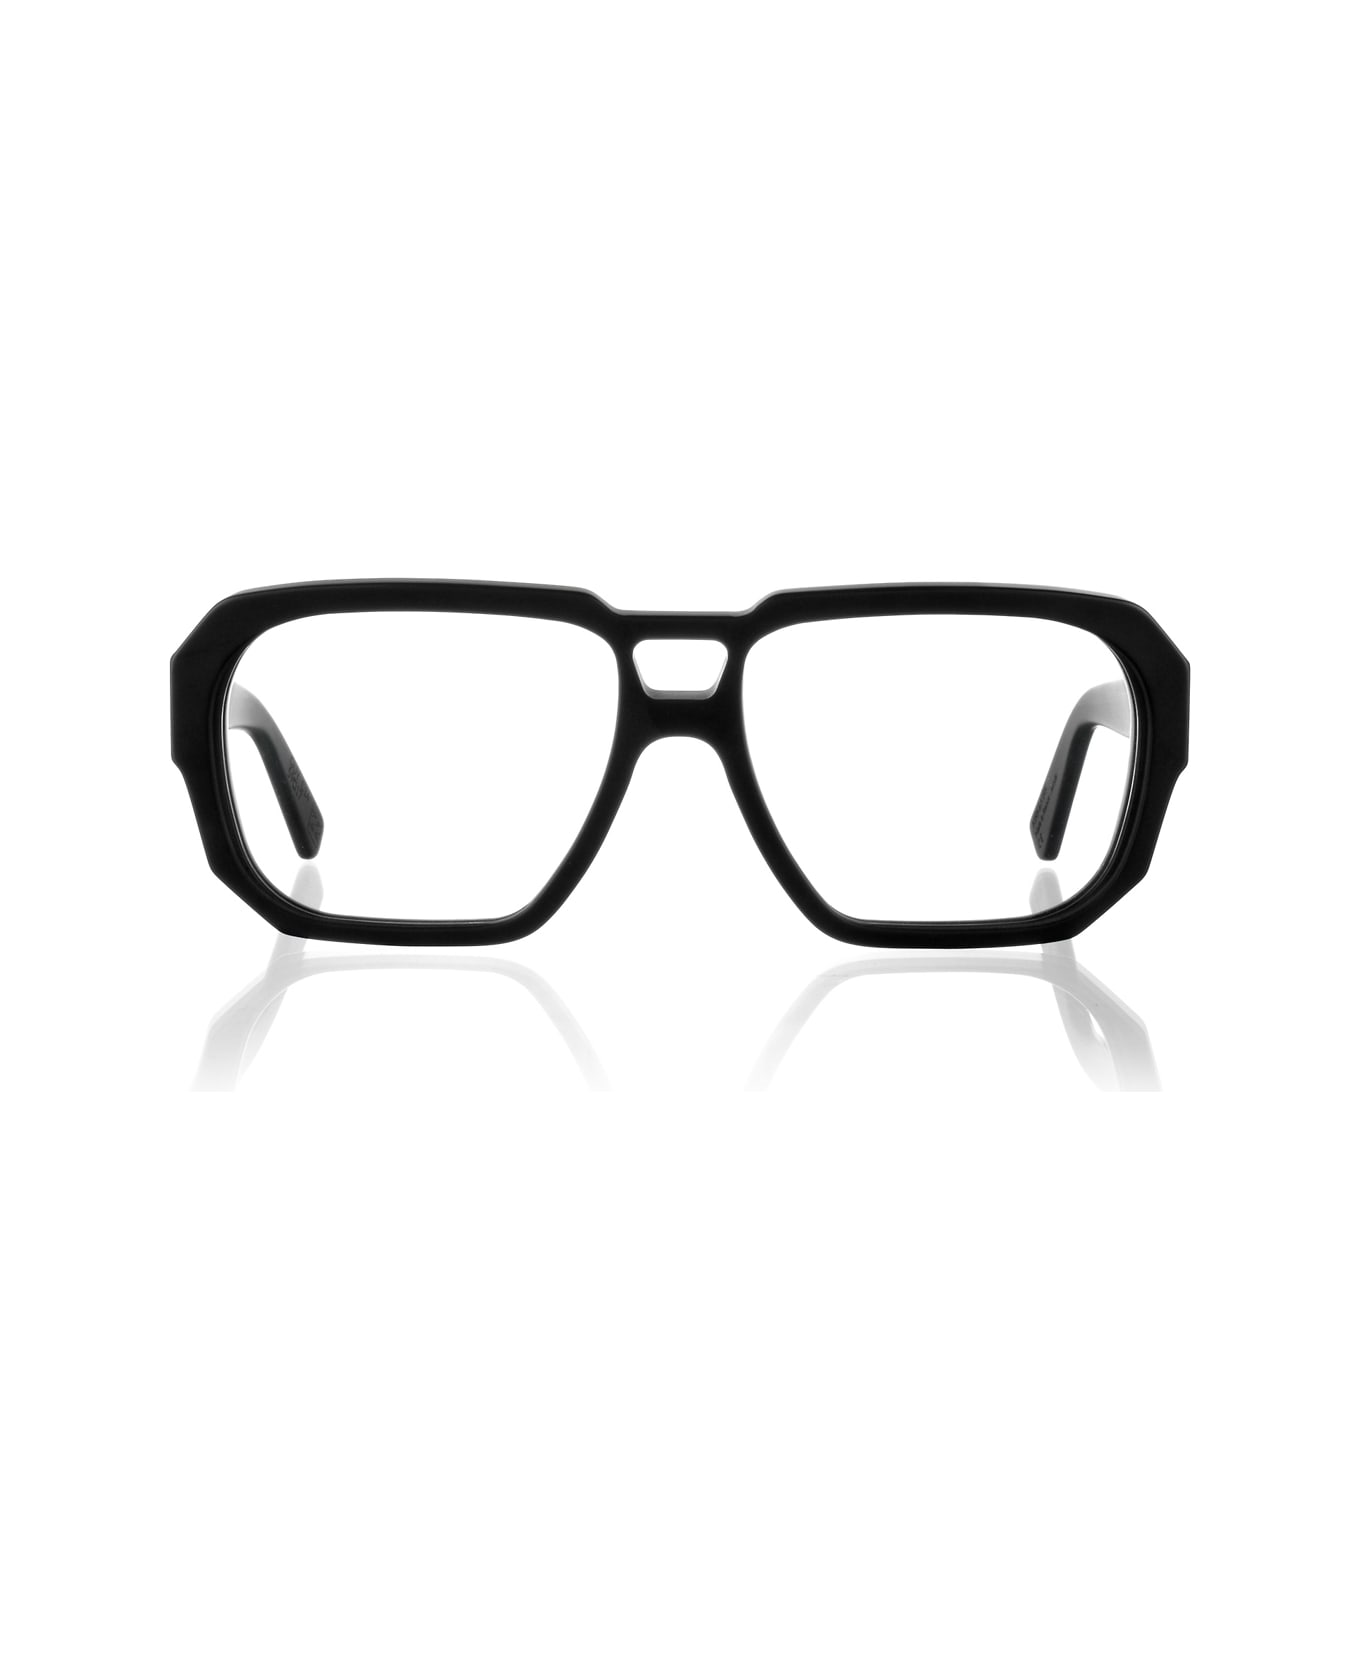 Kirk & Kirk Guy C14 Matte Black Glasses - Nero アイウェア